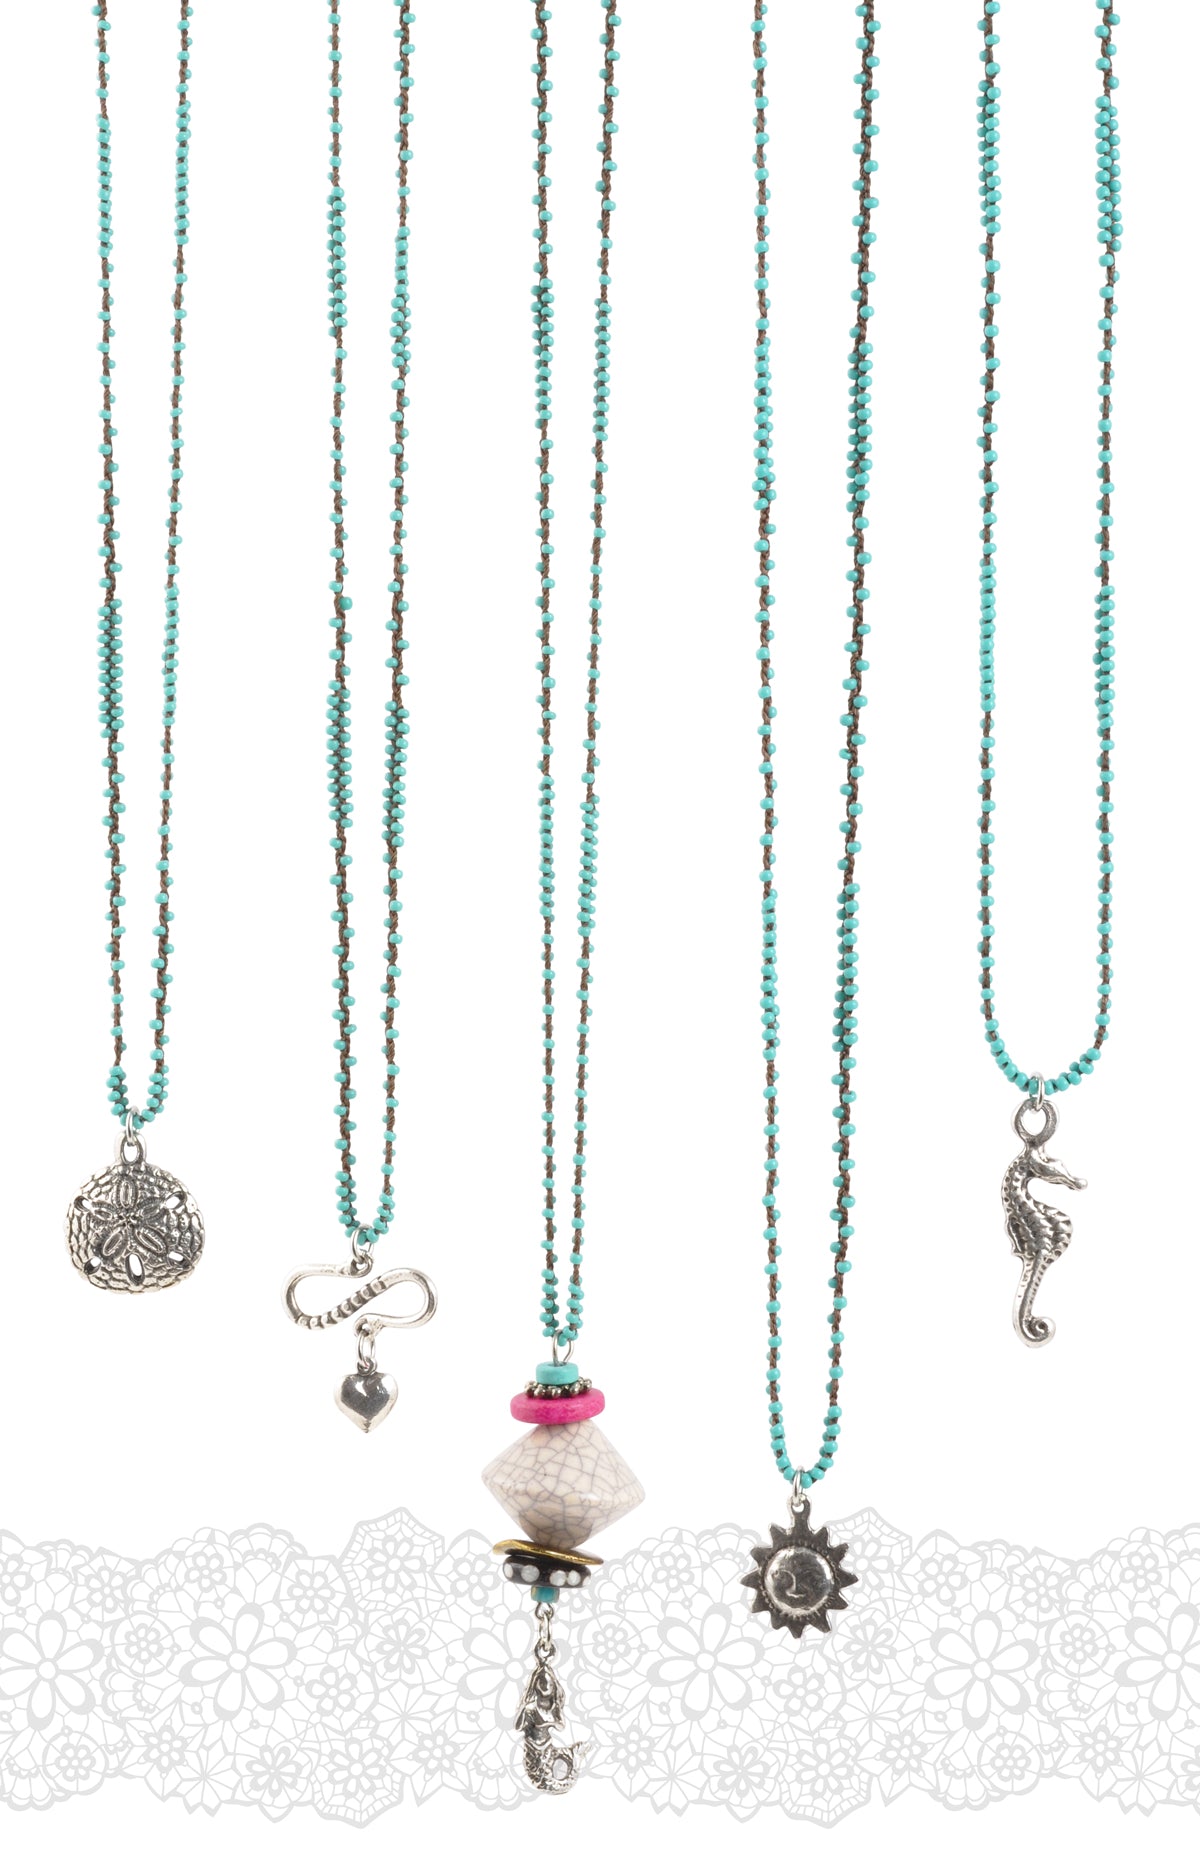 Hand Braided Necklace Blog Tamara Scott Designs